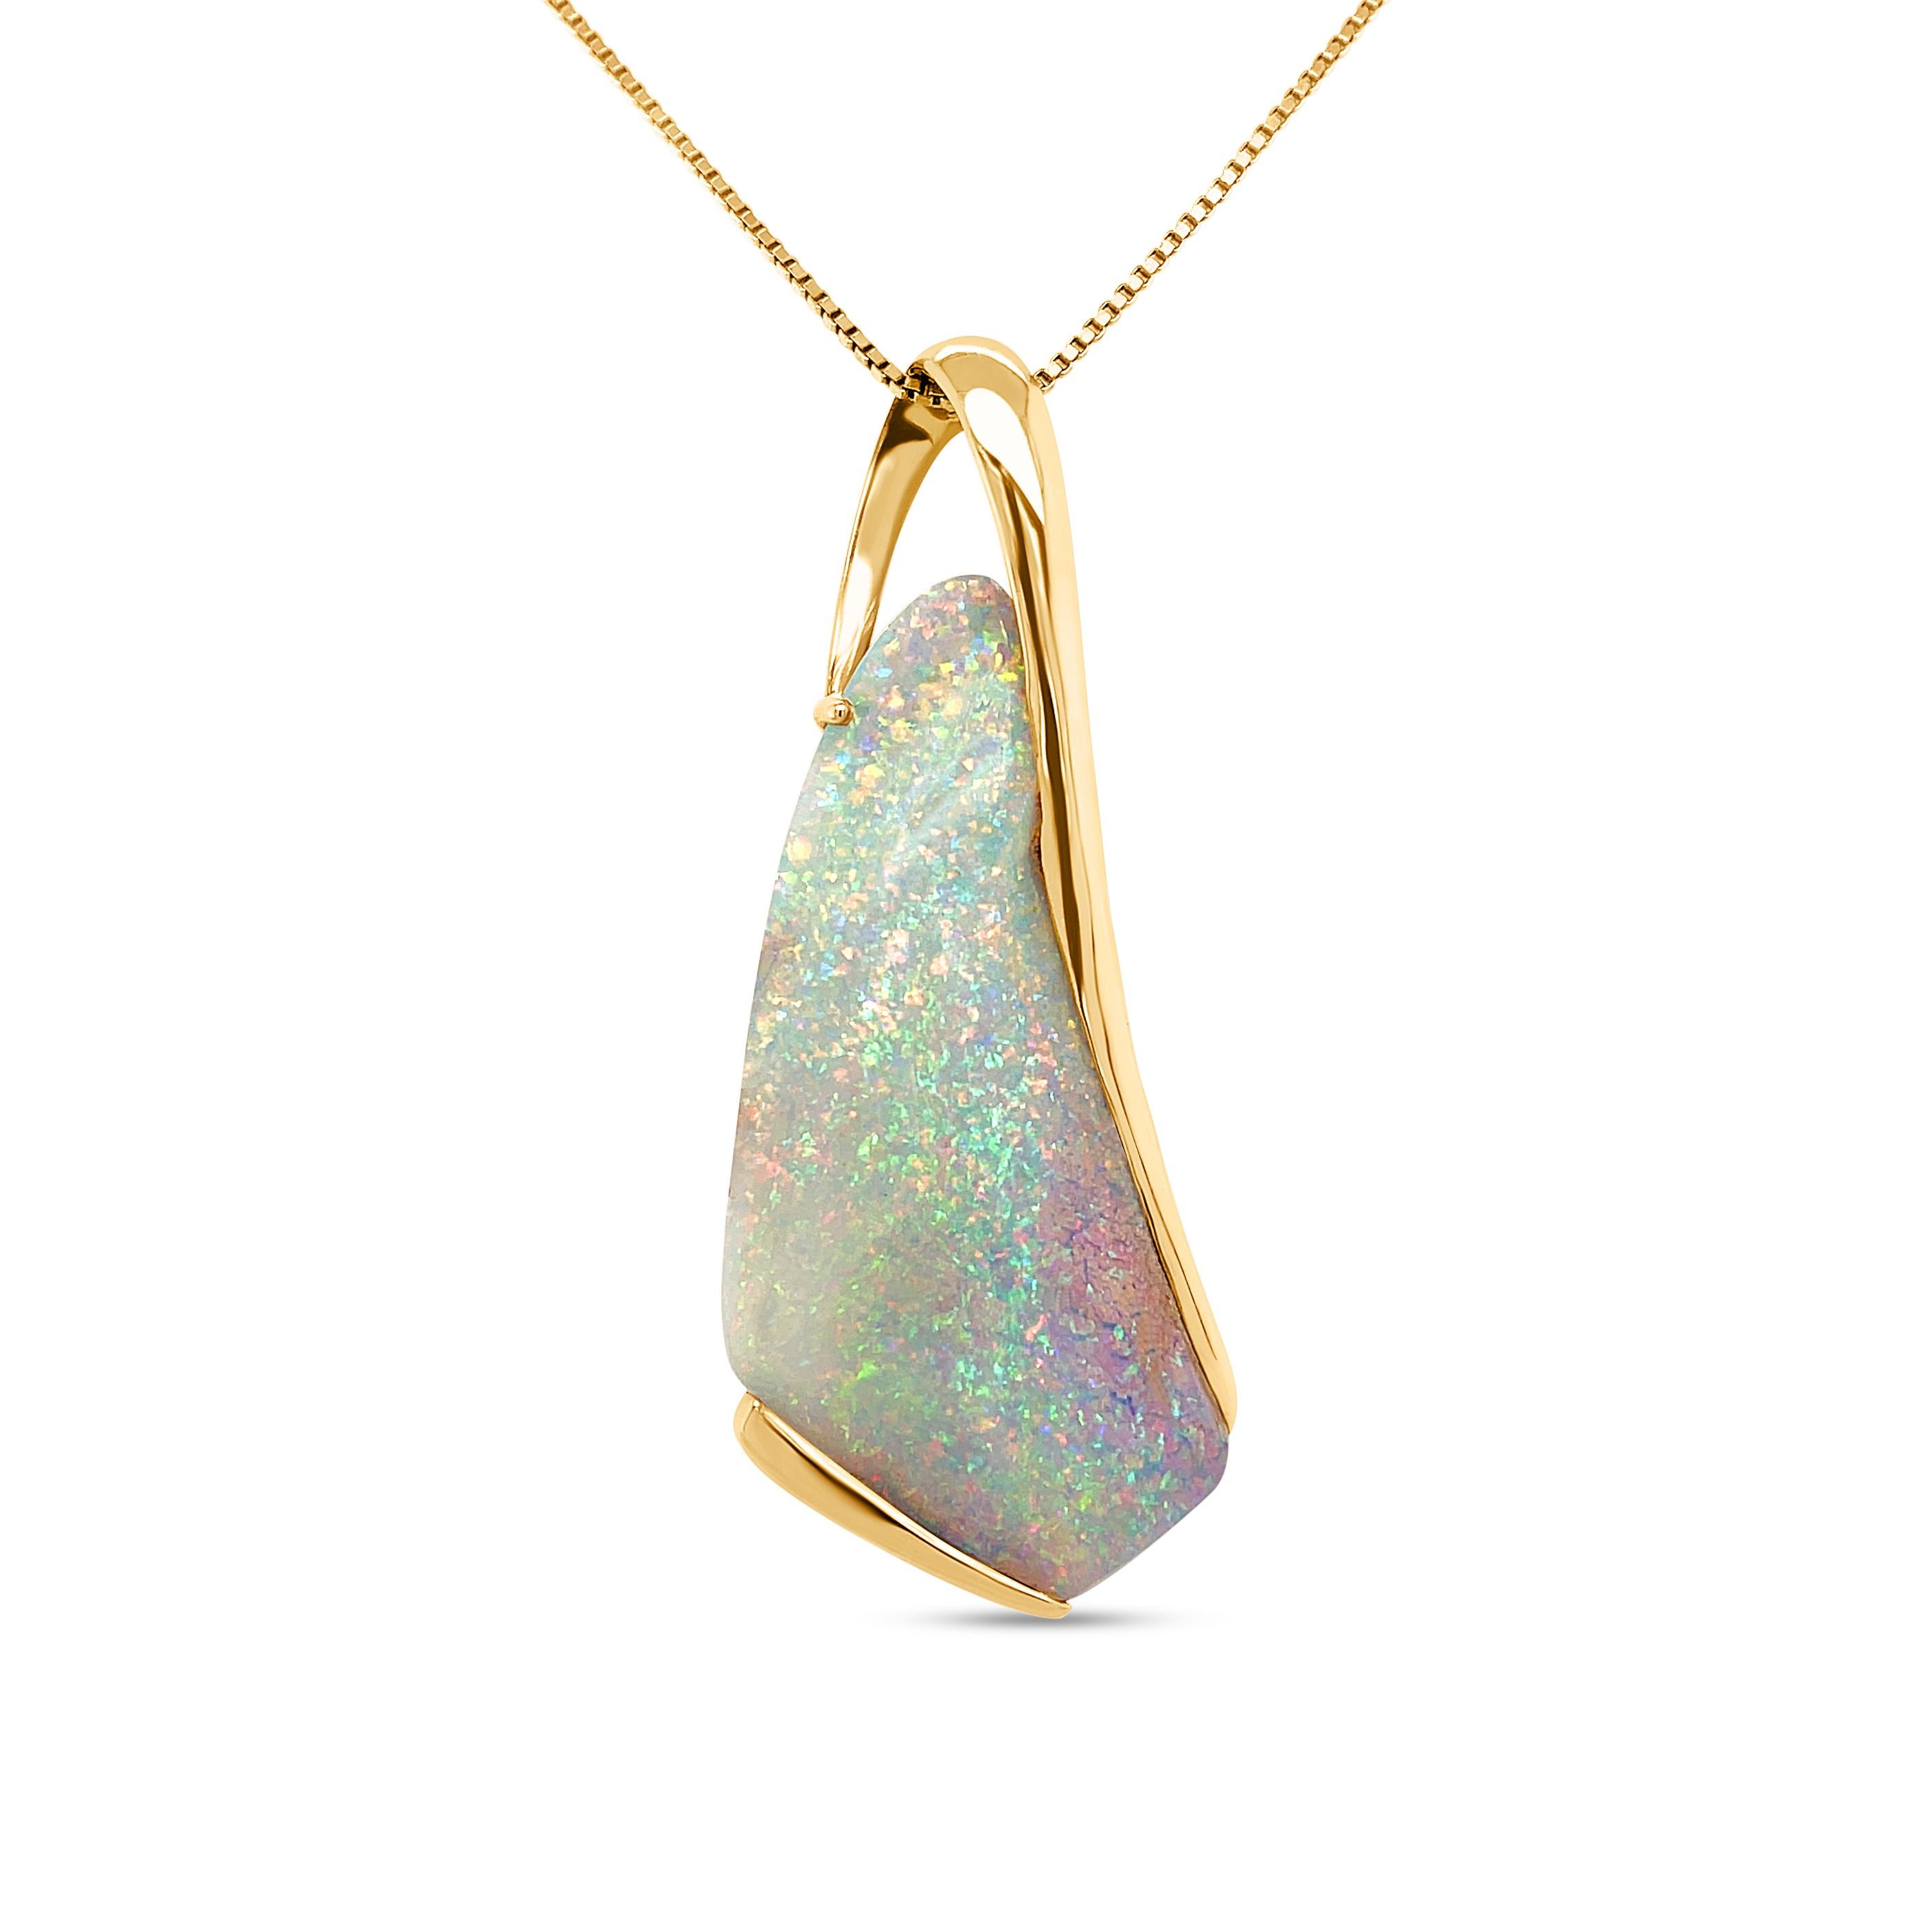 Les bleus blancs et les argents étincelants des rêves hivernaux tourbillonnent dans ce pendentif rêveur en opale de roche (32,73 ct) habilement serti dans de l'or jaune 18 carats. Le pendentif 